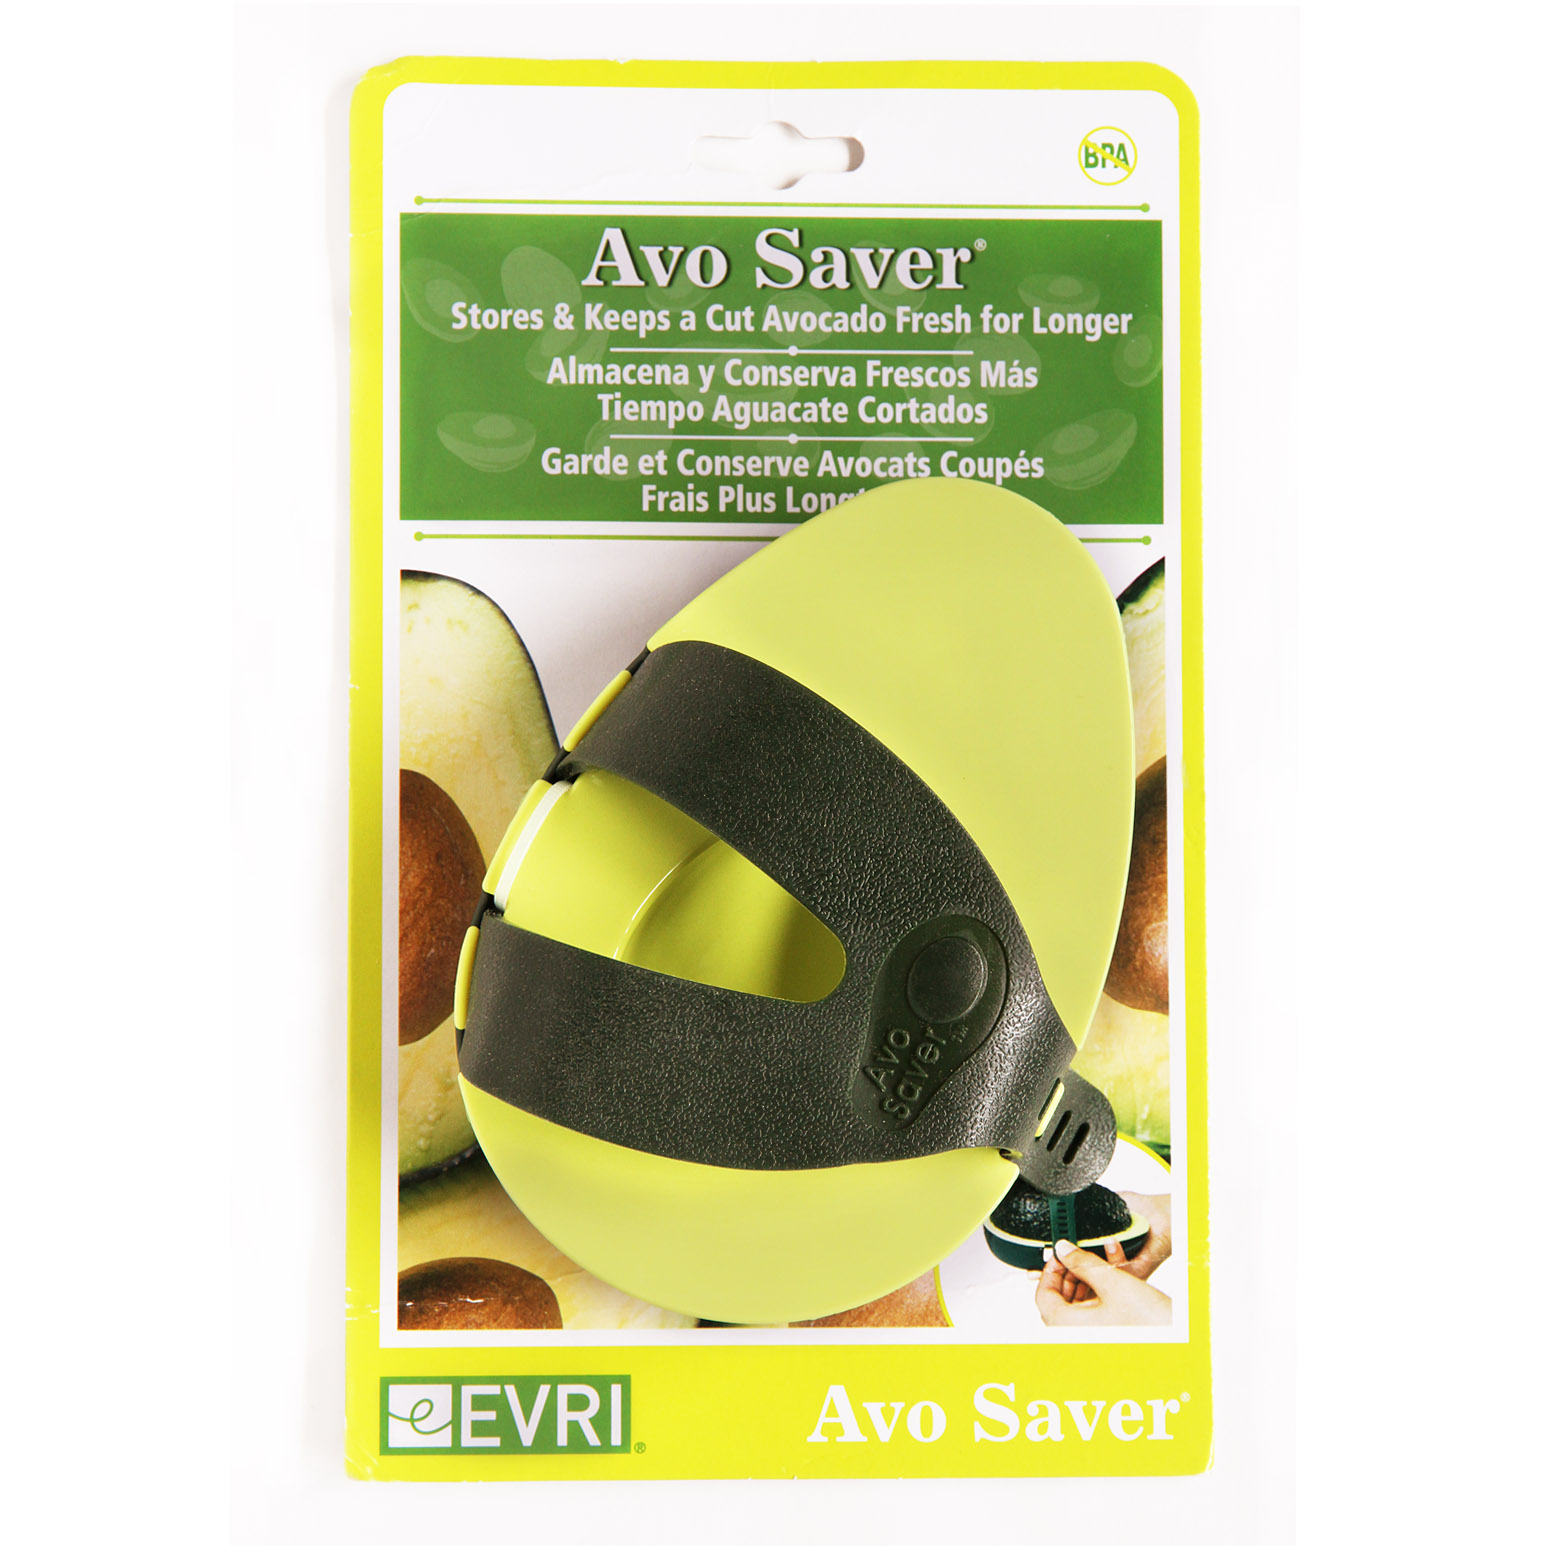 アボ・セーバー (Avo Saver) / 海外雑貨